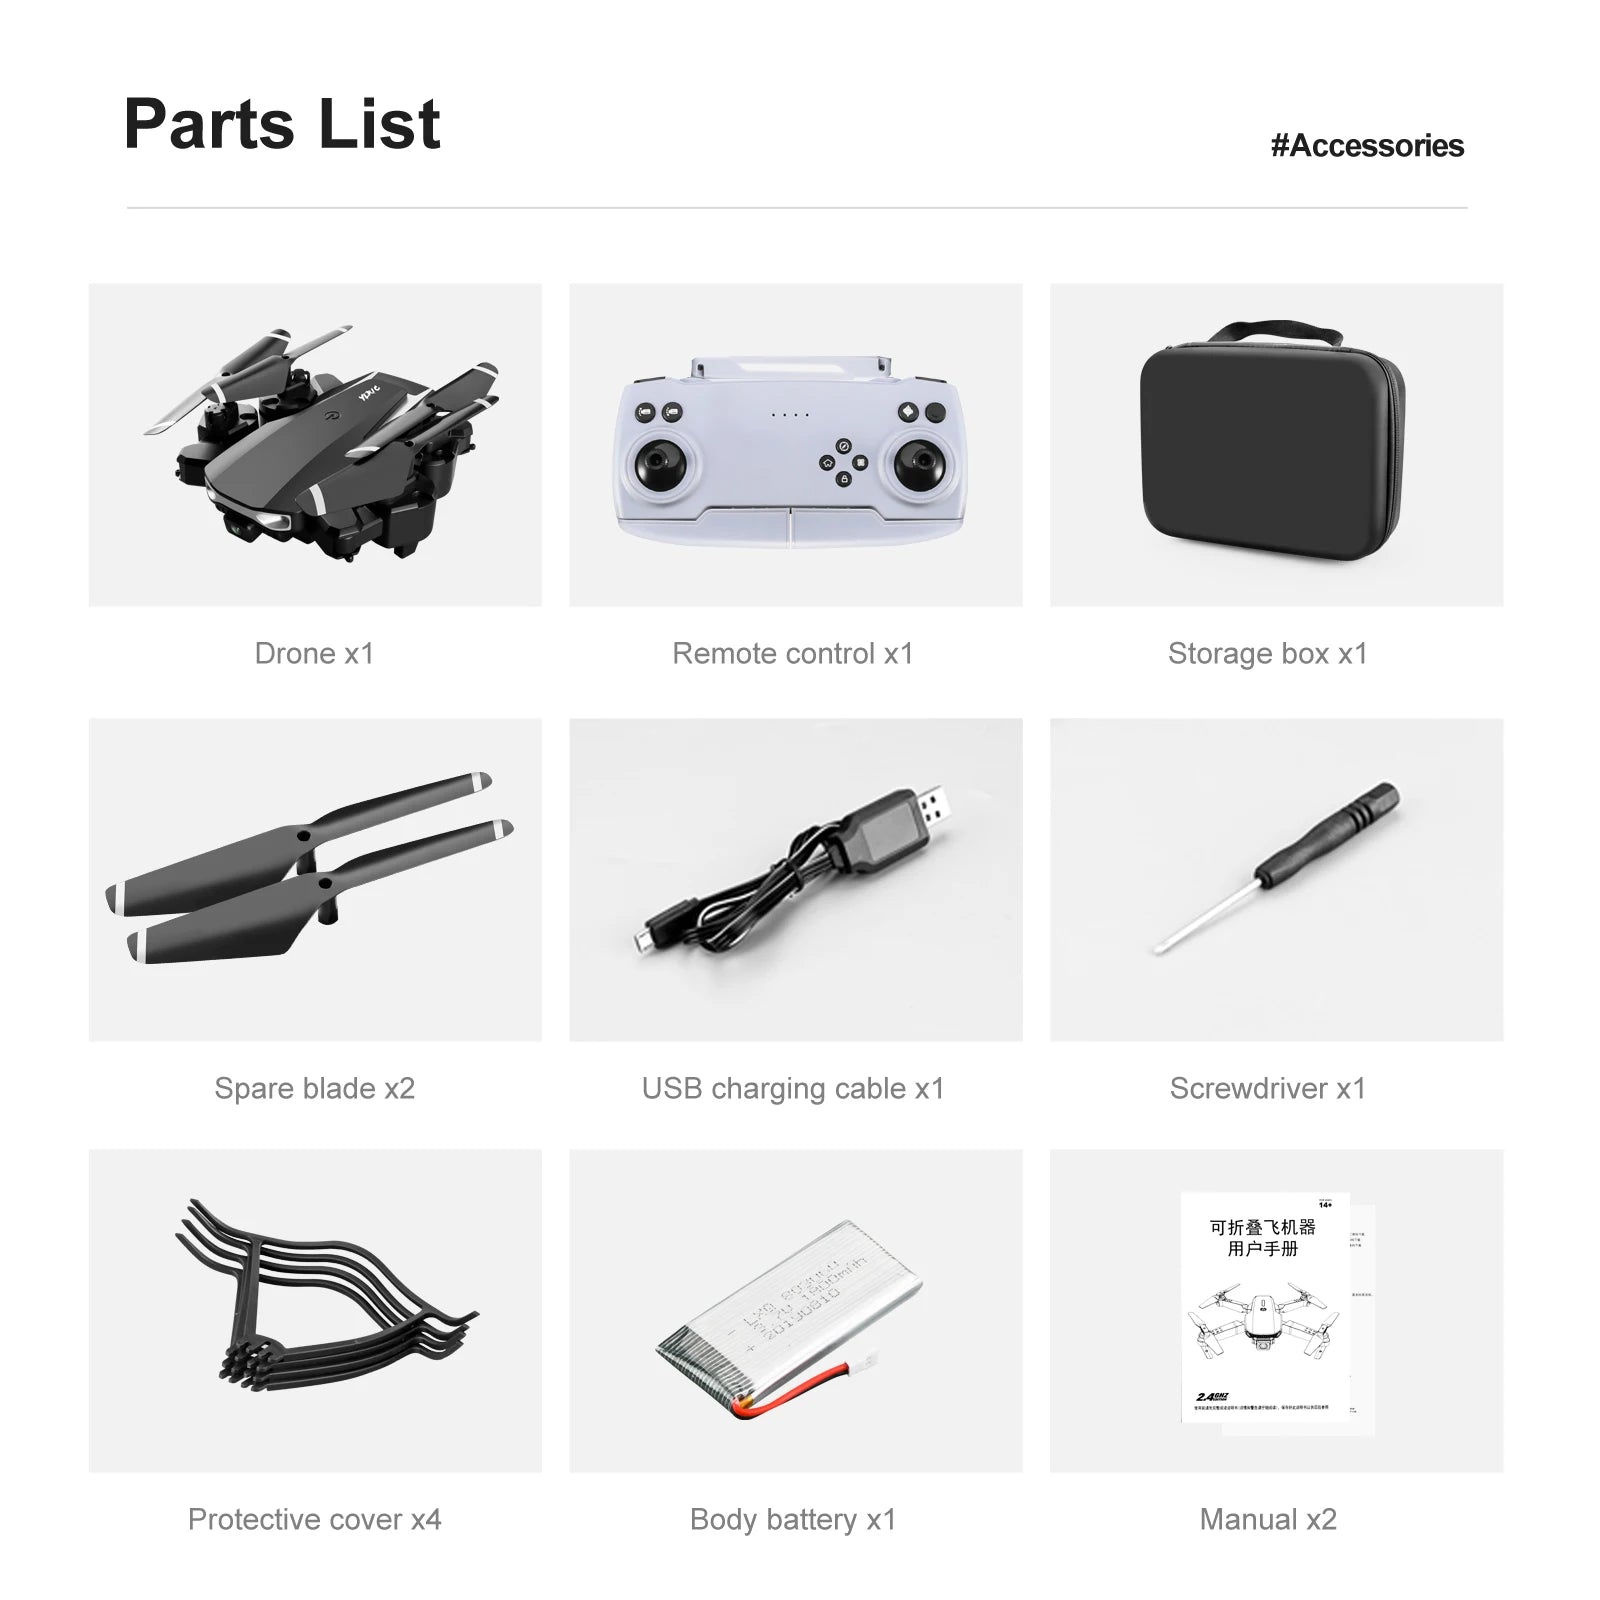 S90 Mini Drone, parts list #accessories drone x1 remote control x